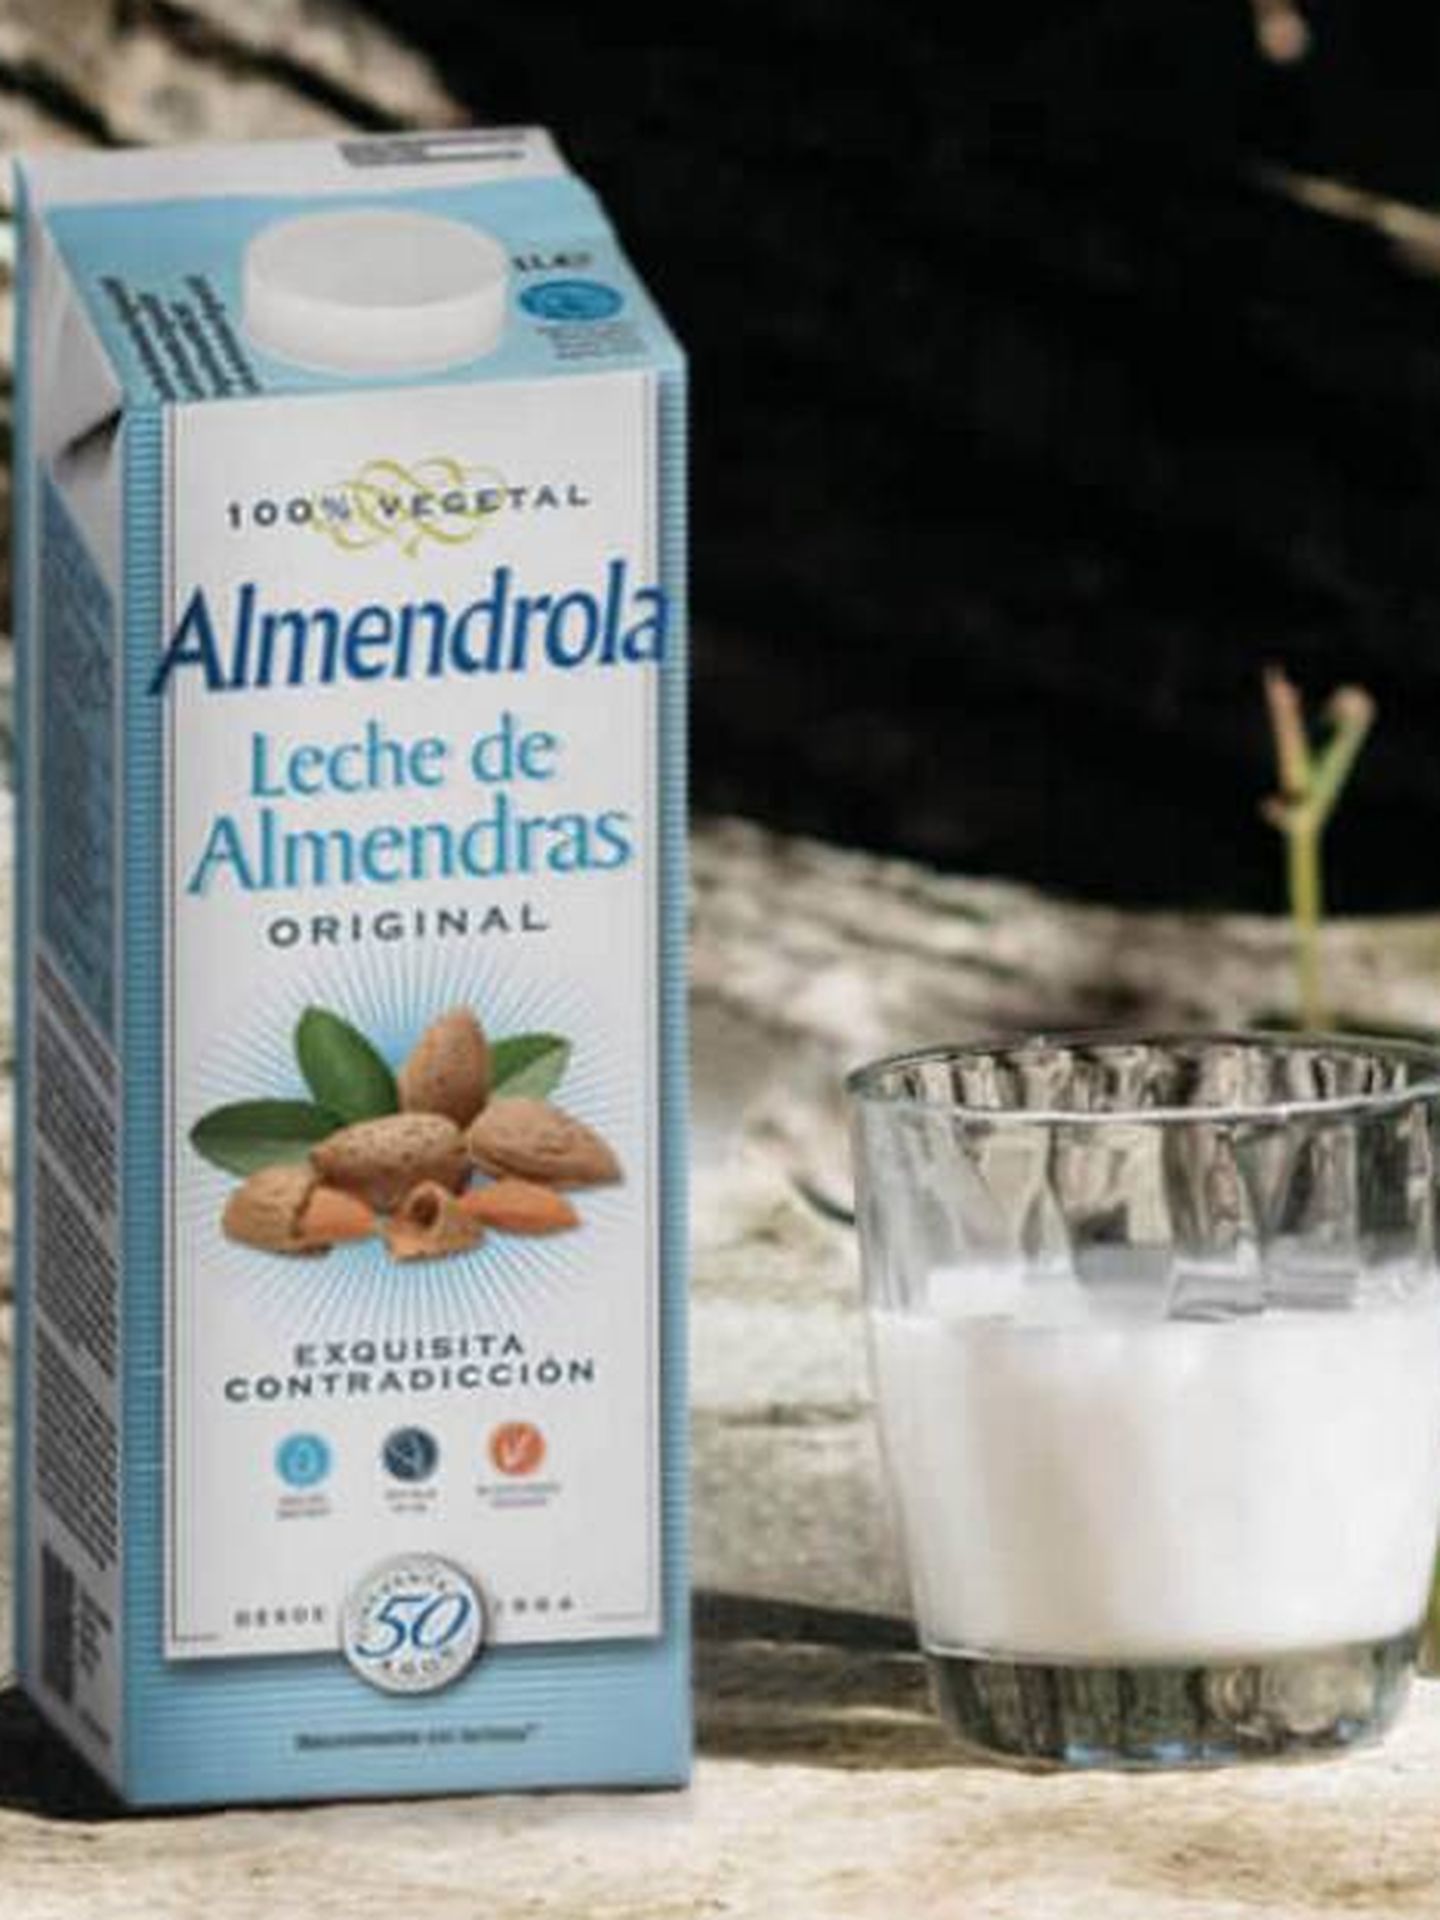 Almendrola es otra de las marcas que hablan abiertamente de 'leche de almendras'.